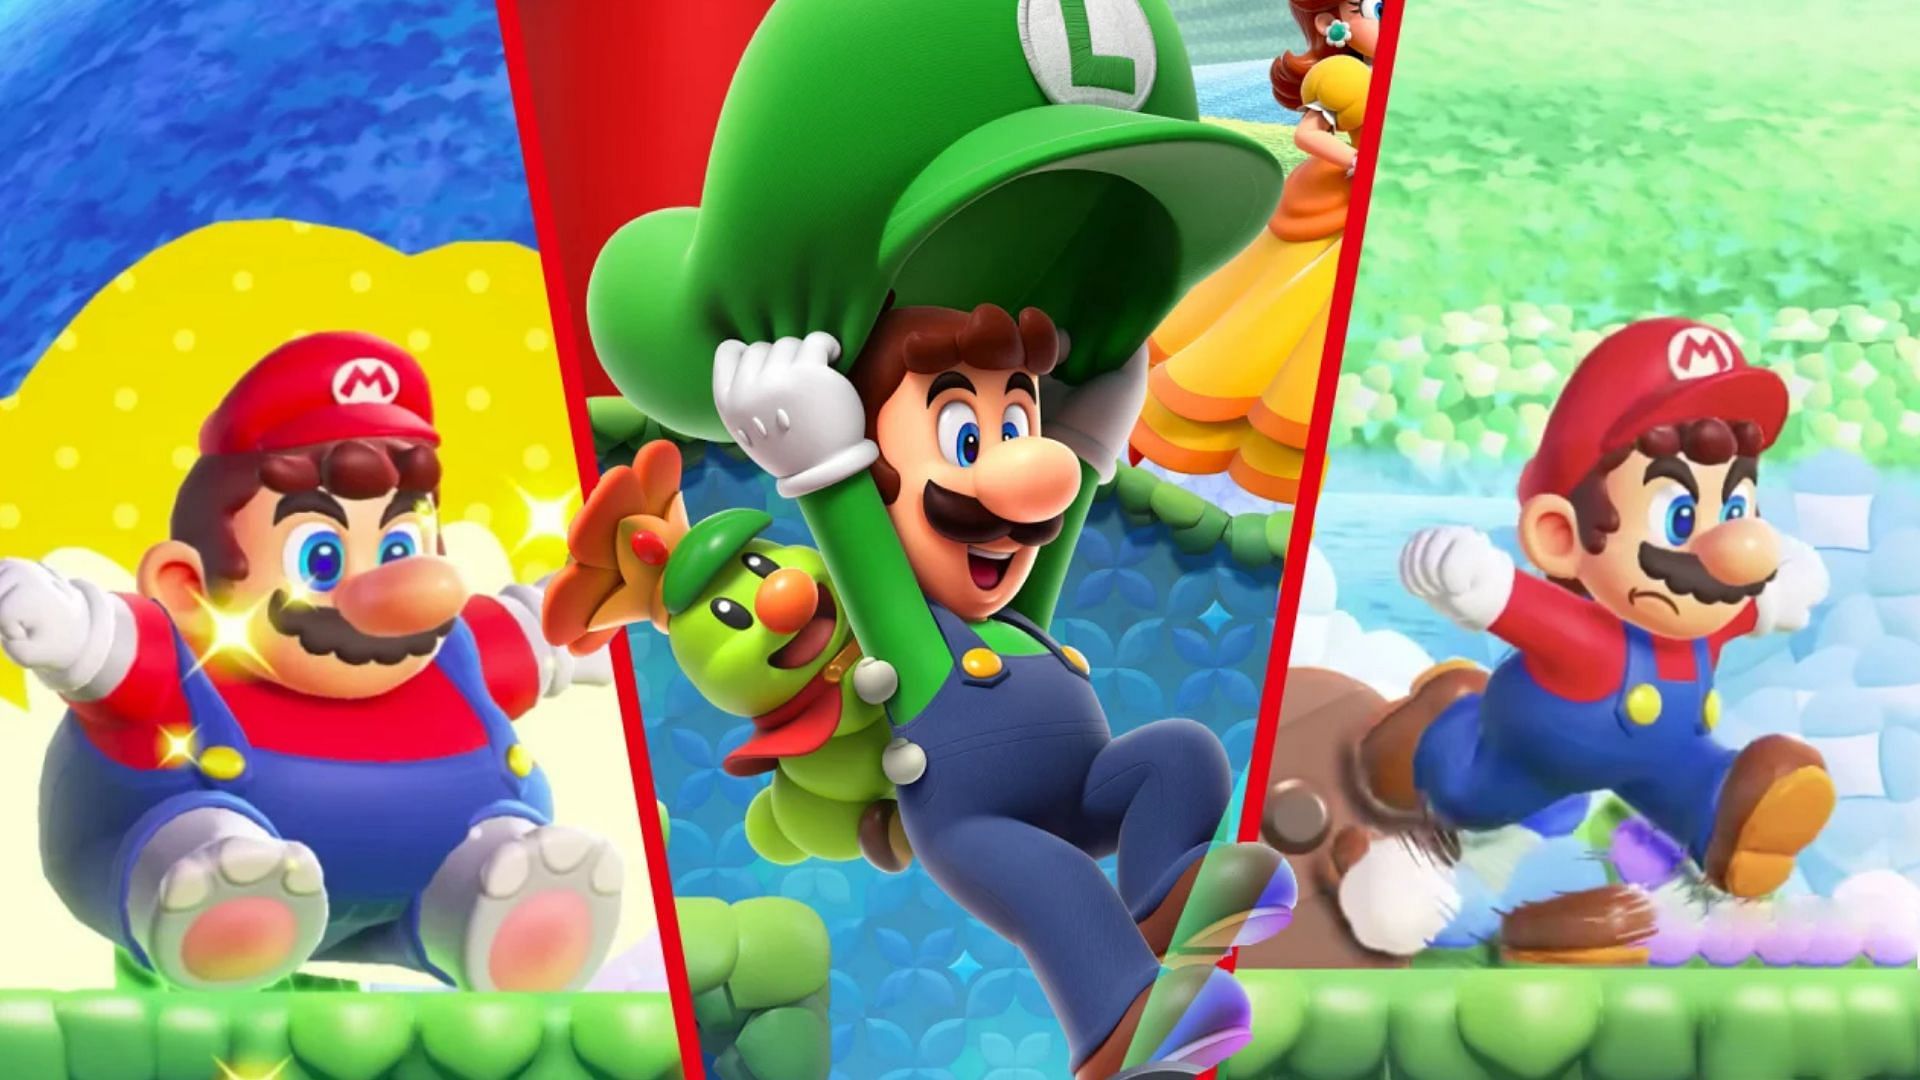 Super Mario Bros. Wonder features new transformations (Image via Nintendo)